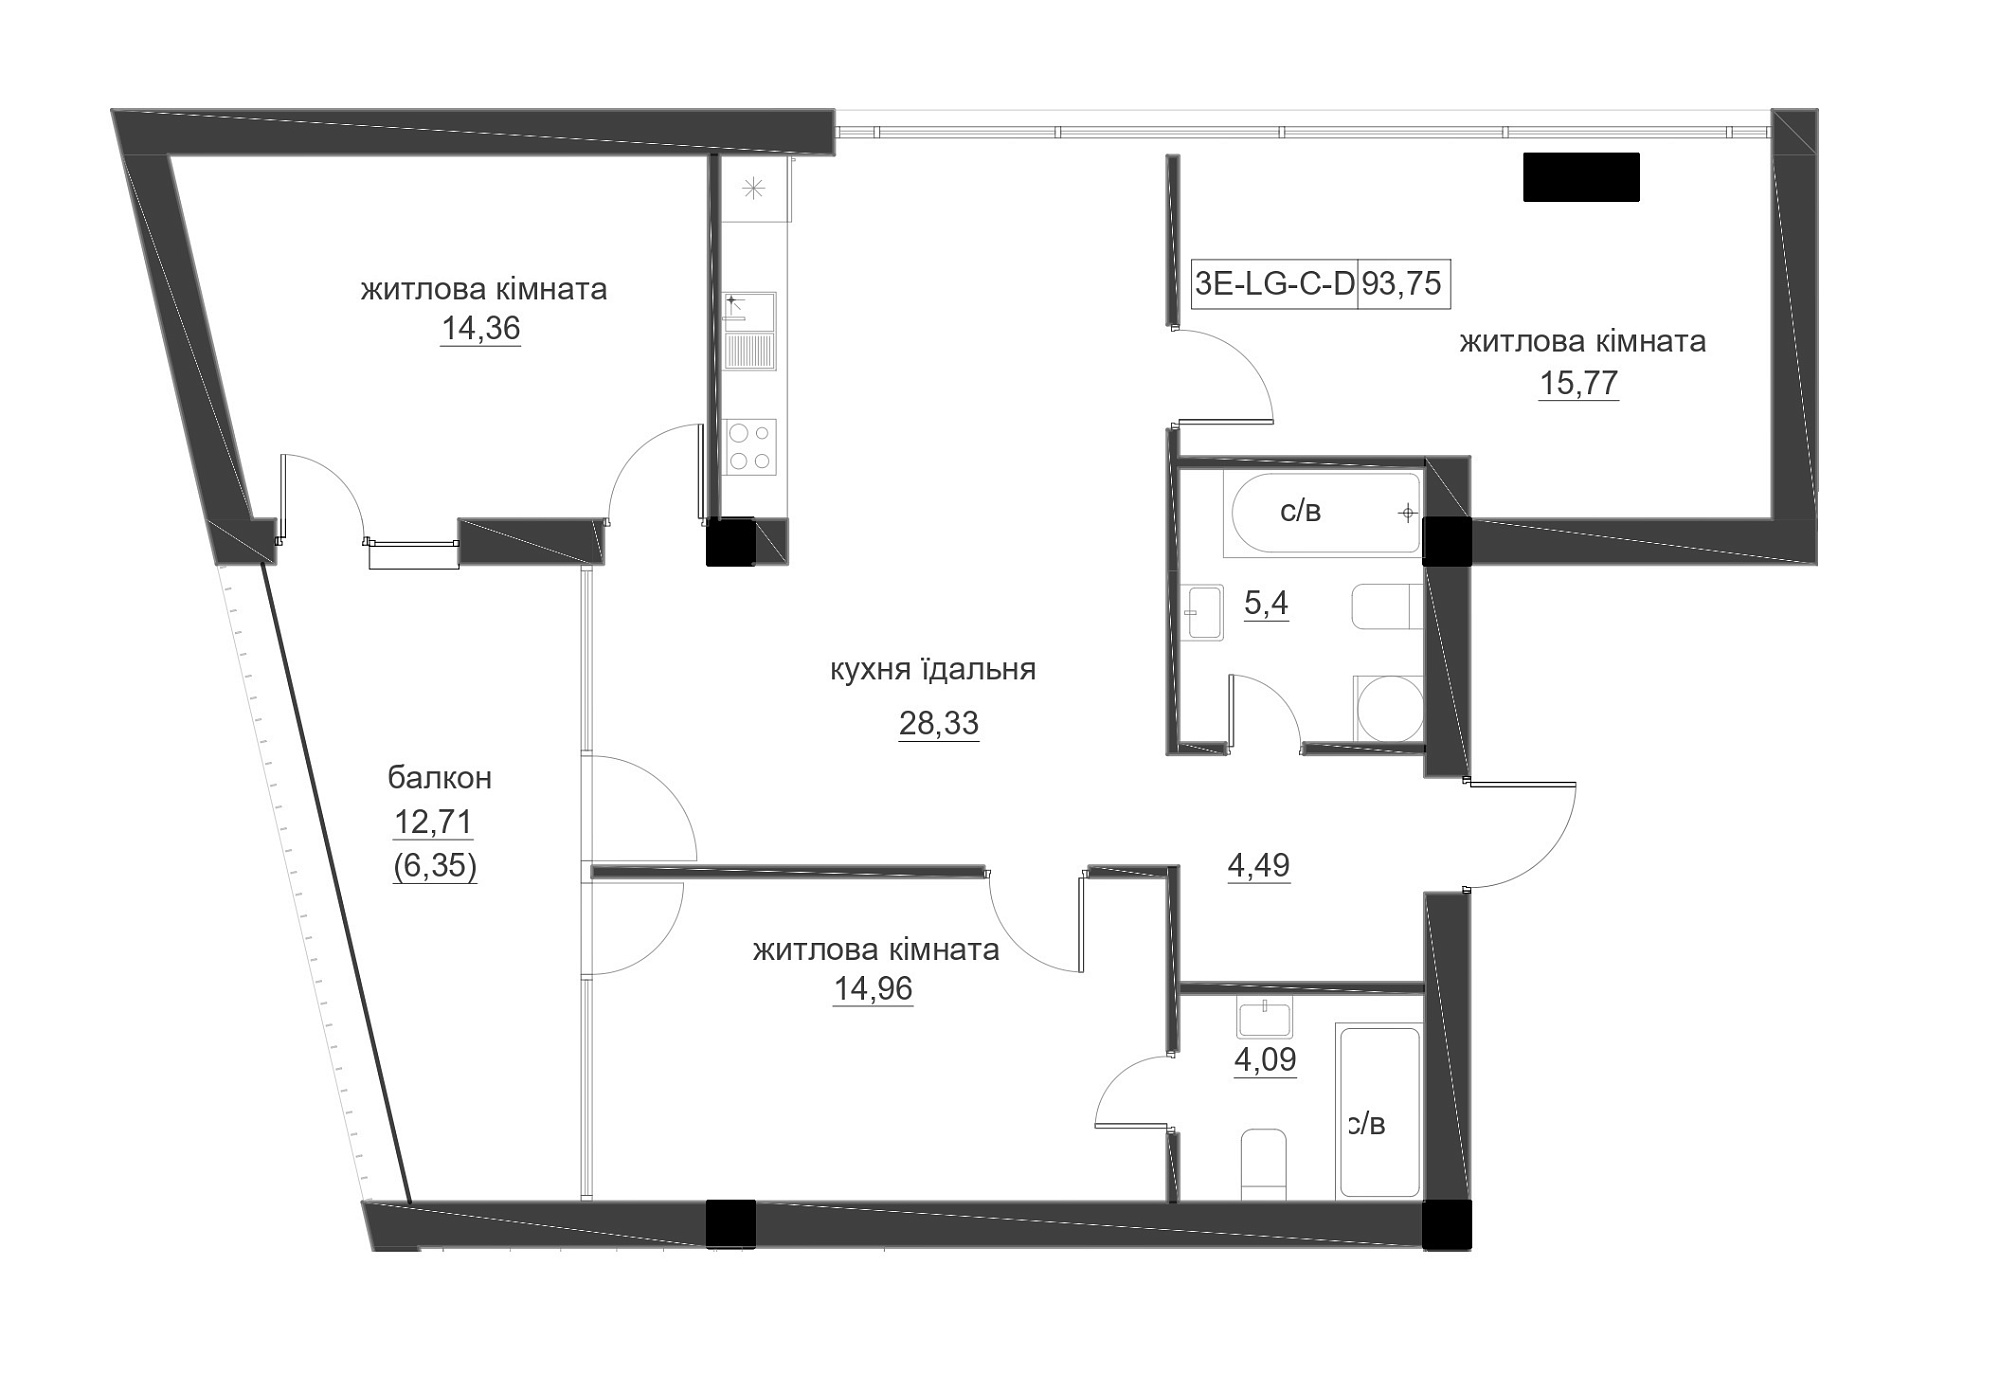 Планування 3-к квартира площею 93.14м2, LR-005-02/0001.